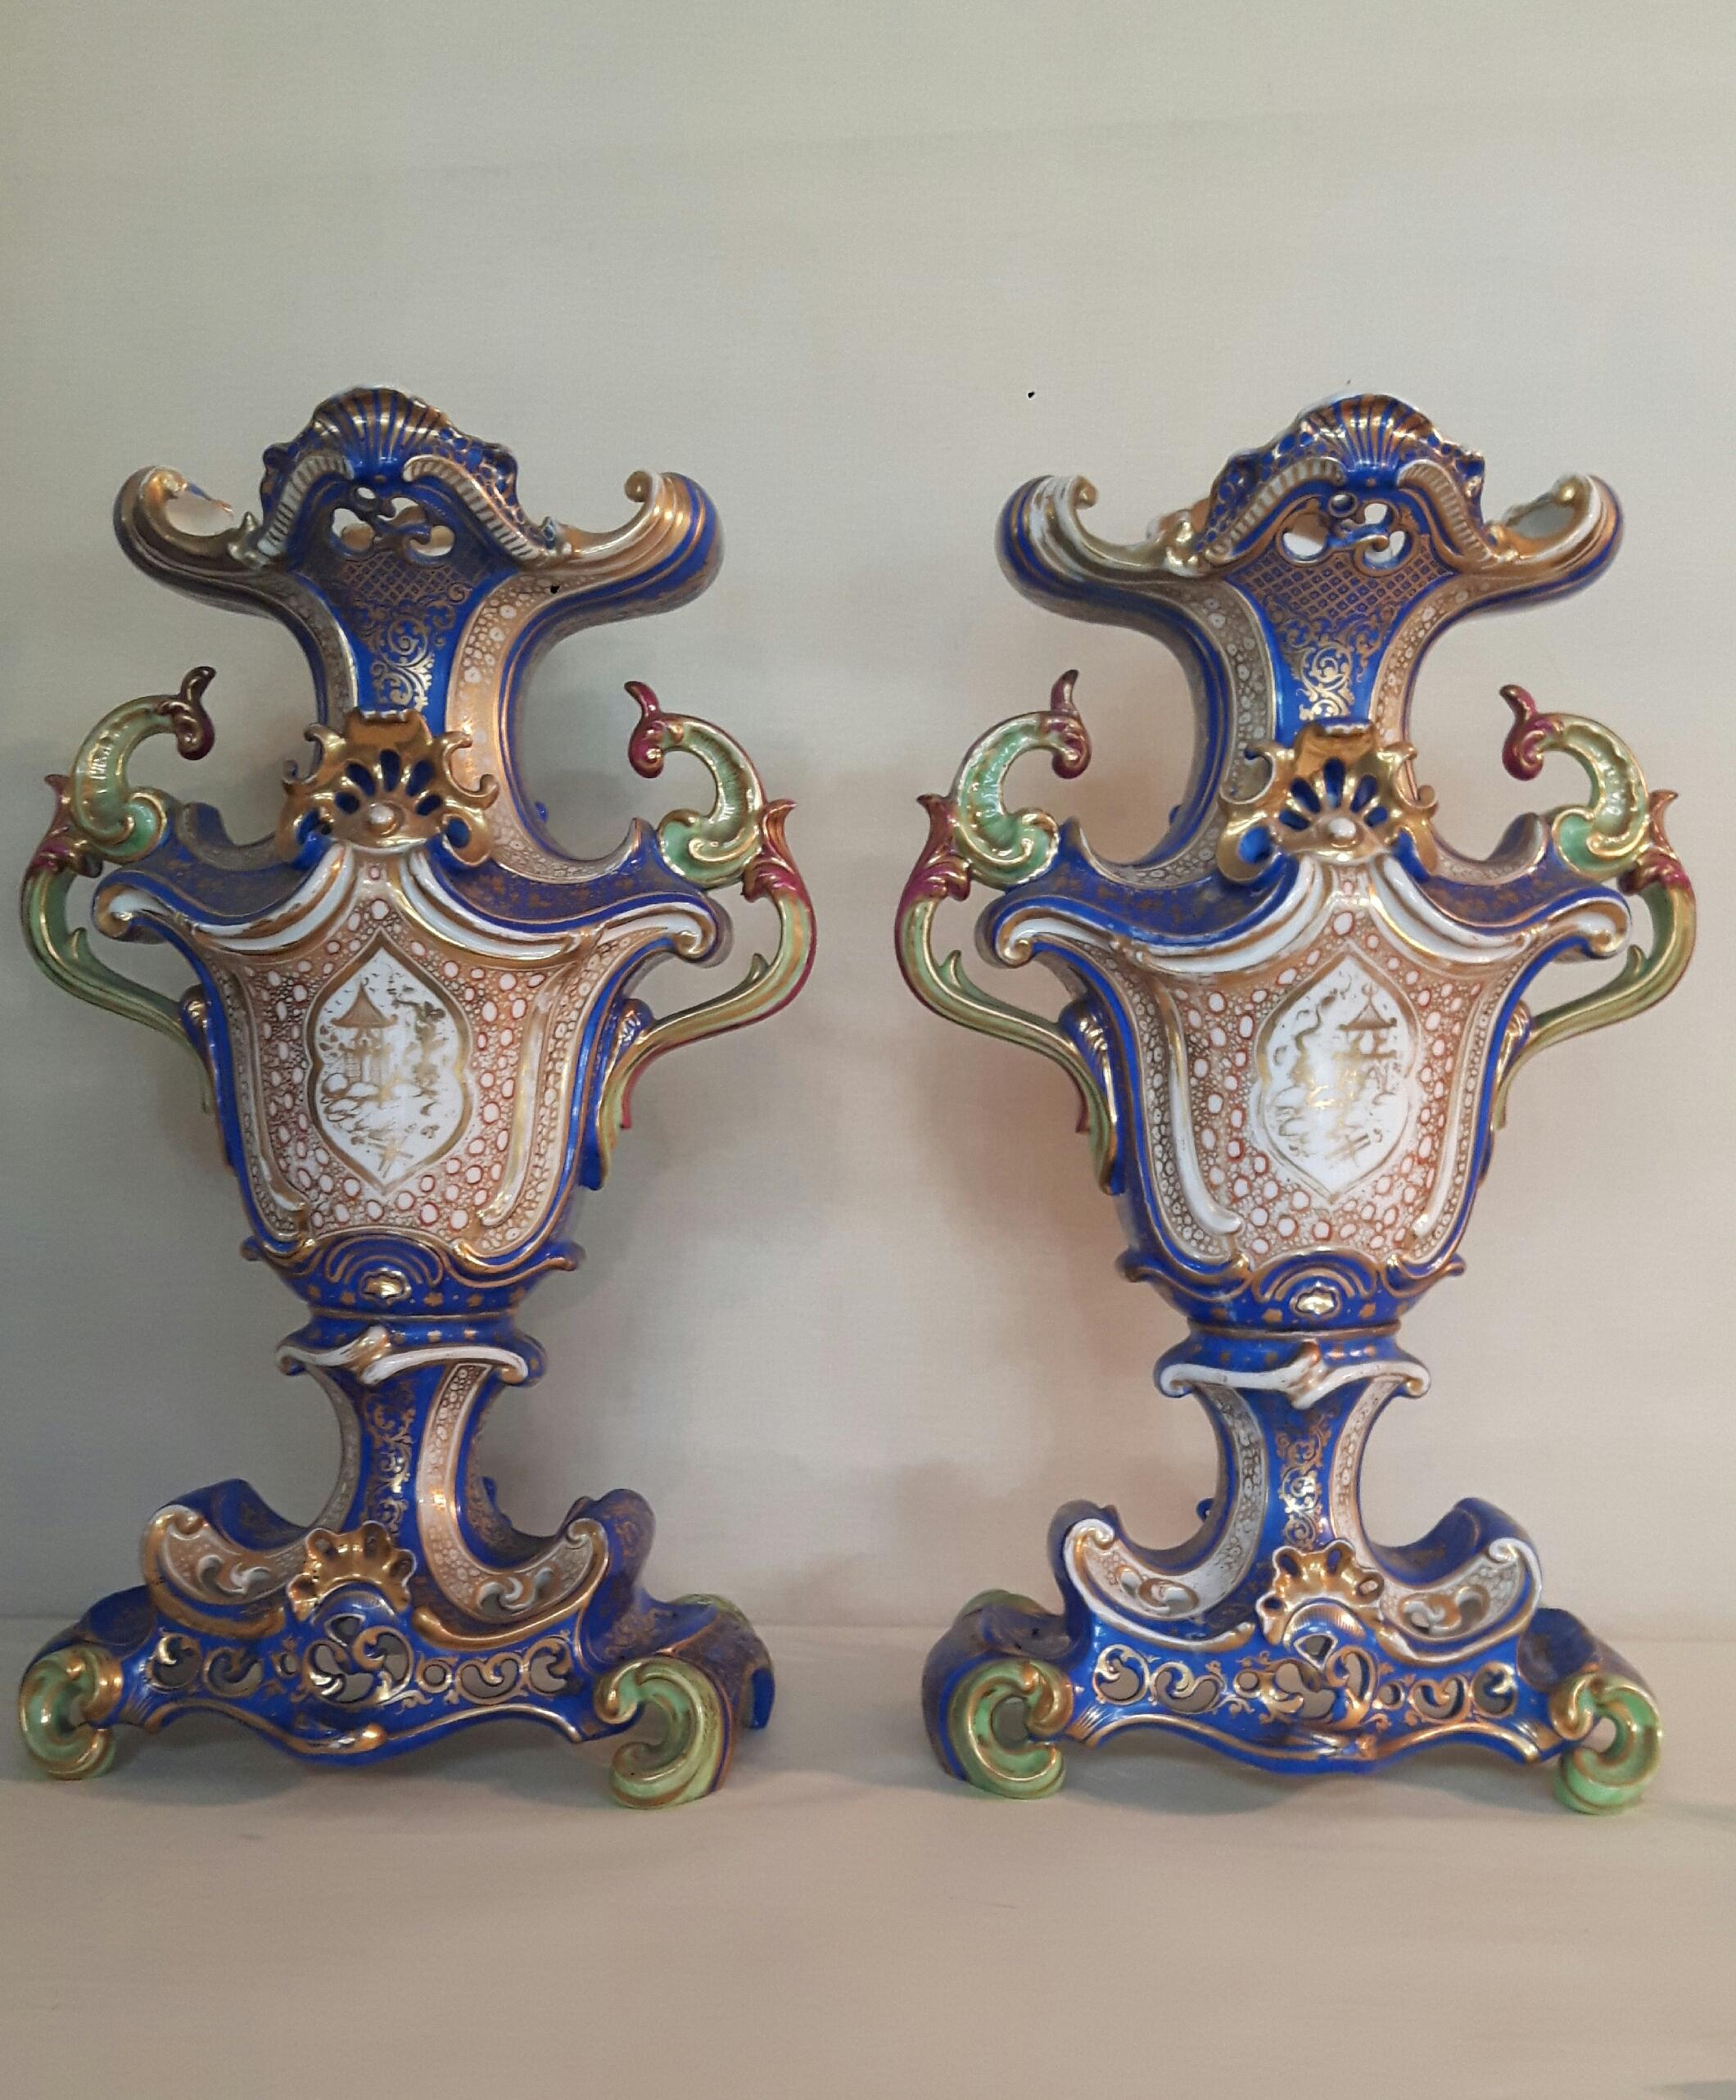 Ein feines Paar handbemalter Vasen im Jacob-Petit-Stil mit kaiserlich-chinesischen Szenen aus dem Leben am Hof. Die Rückseiten der Vasen sind aufwändig mit vergoldeten Chinoiserie-Motiven verziert.